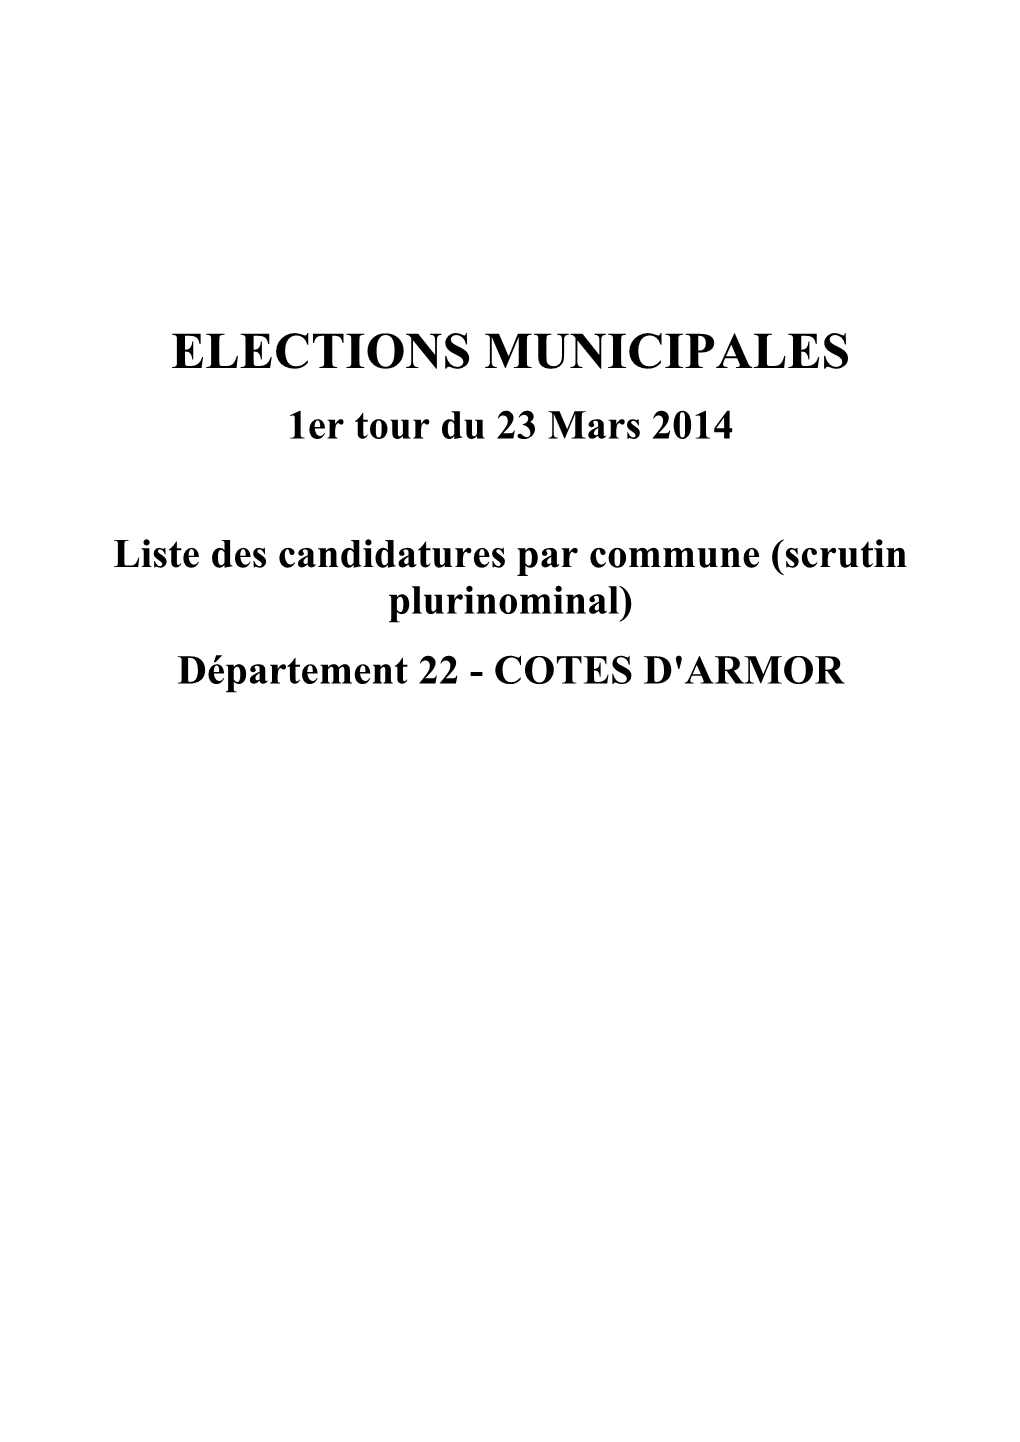 ELECTIONS MUNICIPALES 1Er Tour Du 23 Mars 2014